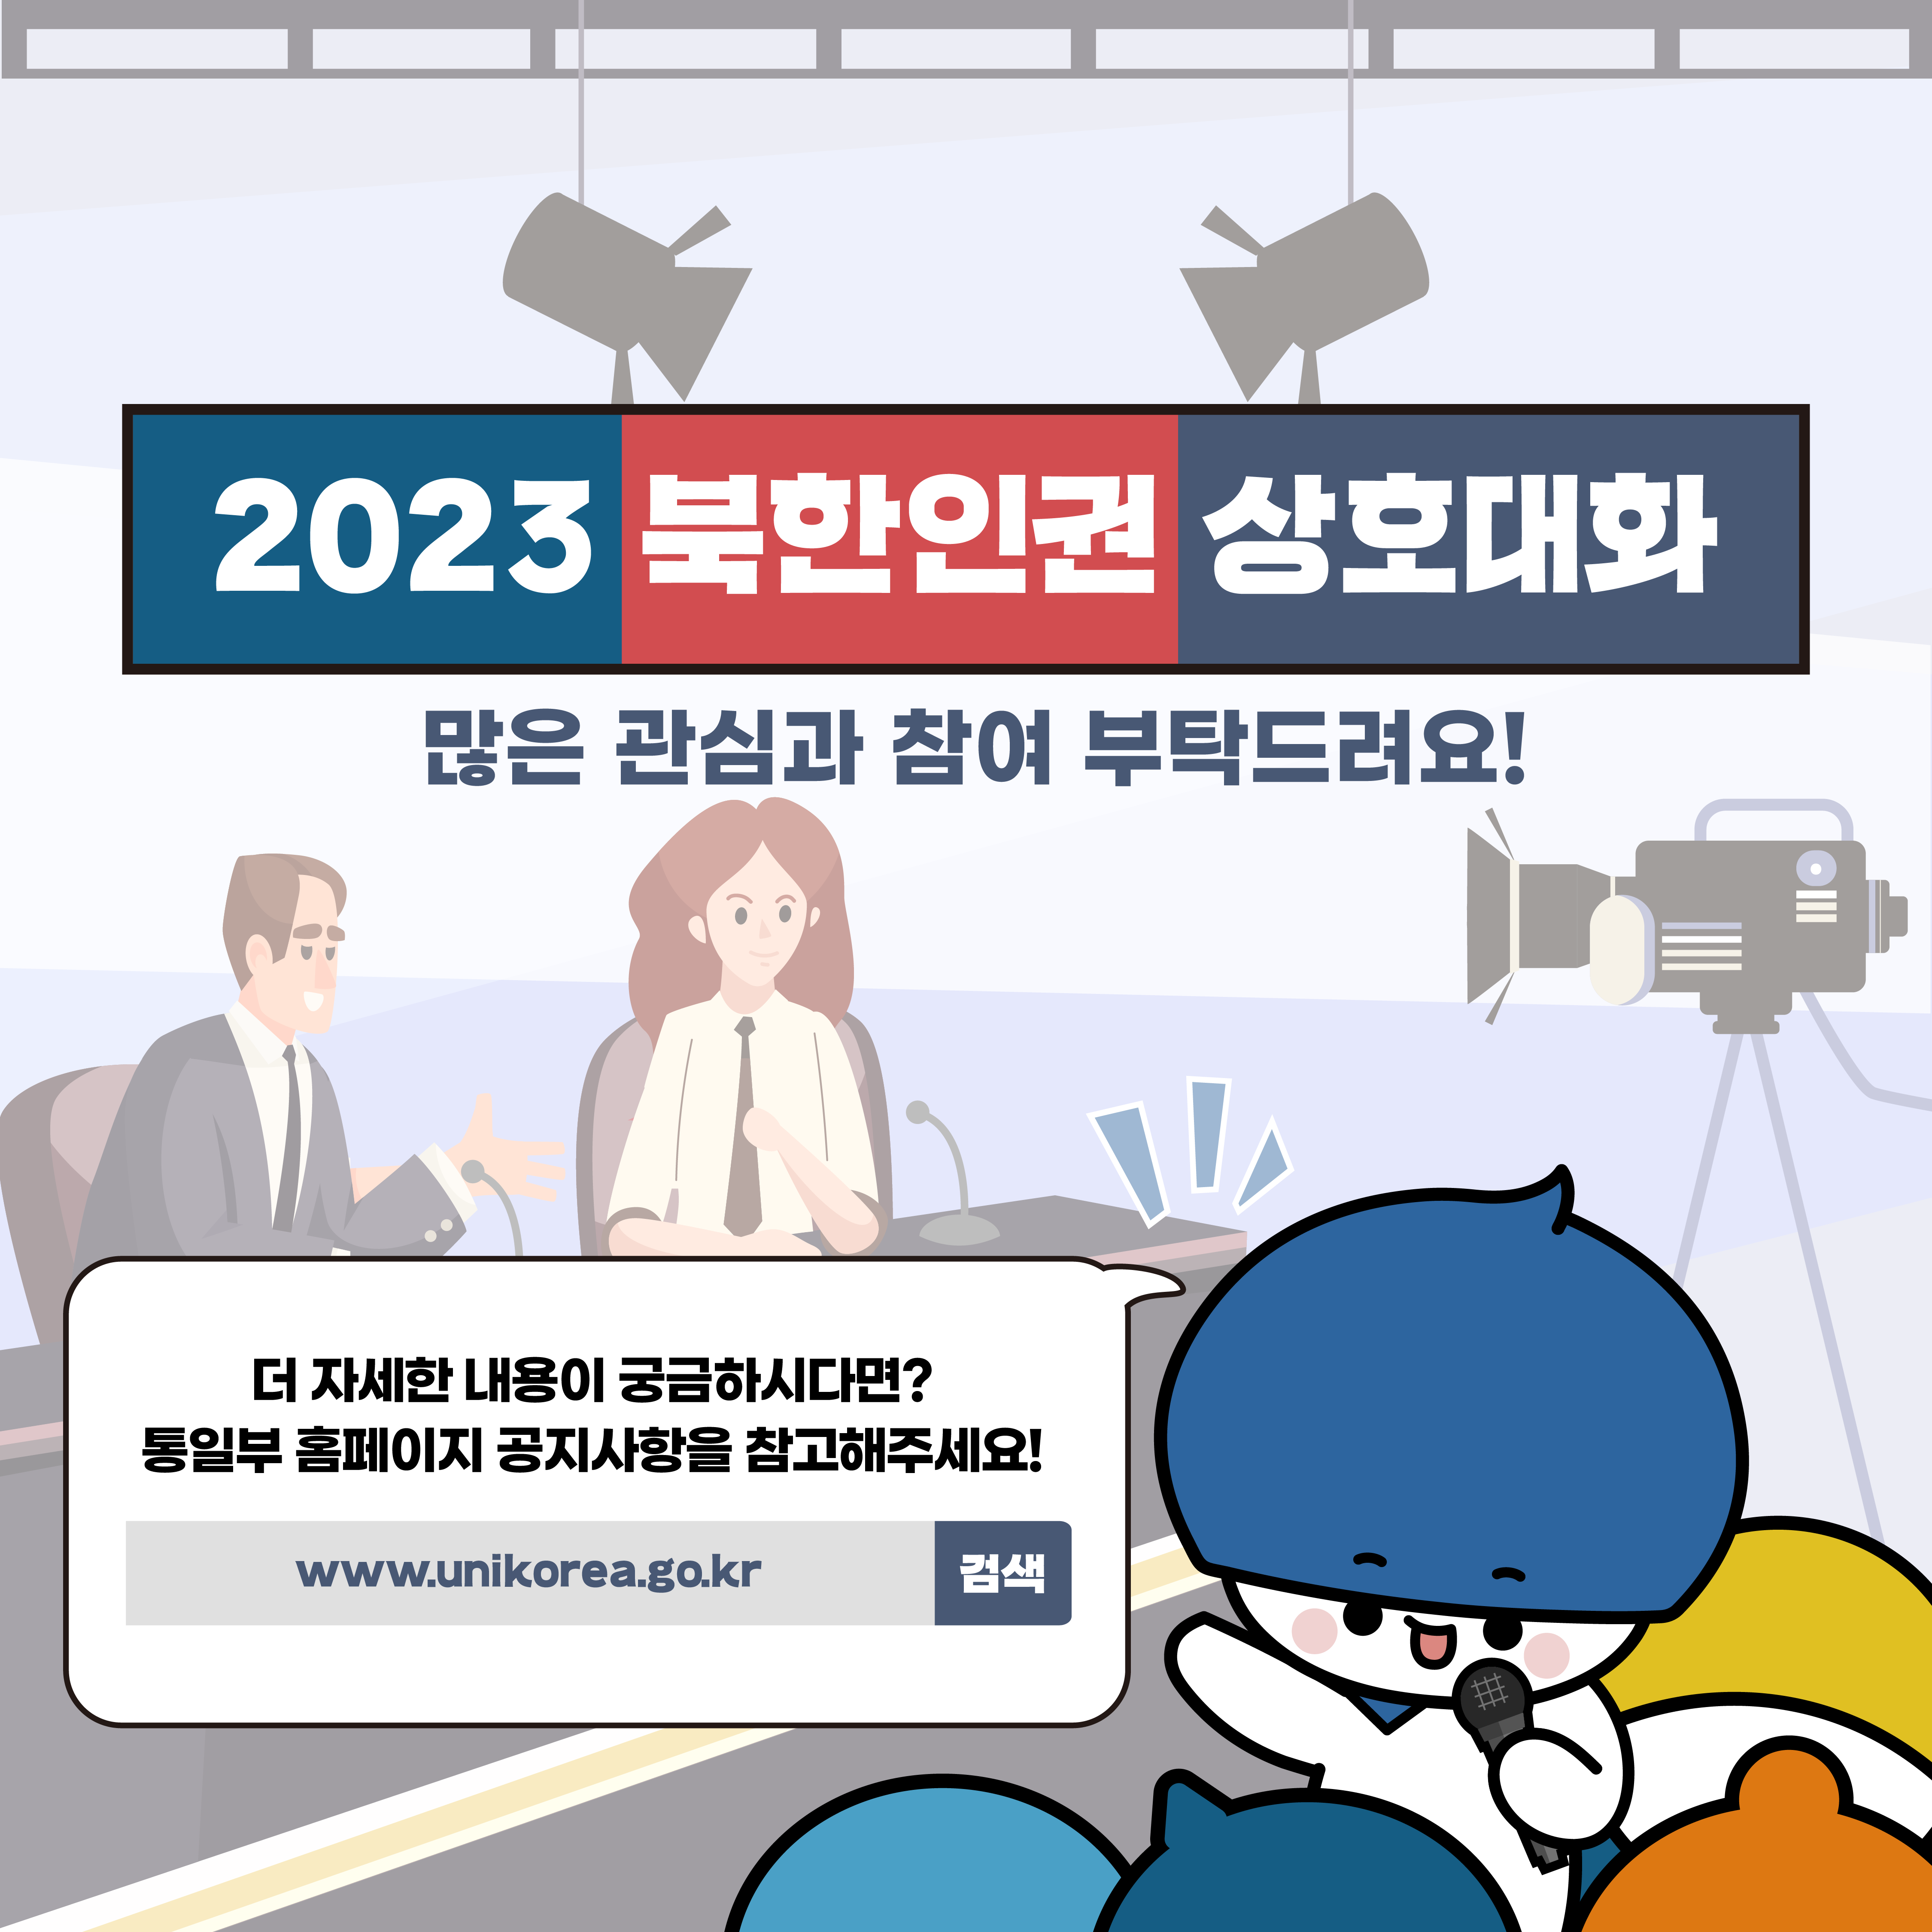 2023 북한인권 상호대화
많은 관심과 참여 부탁드랴요
더 자세한 내용이 궁금하시다면? 통일부 홈페이지 공지사항을 참고해주세요
www.uniokrea.go.kr 검색